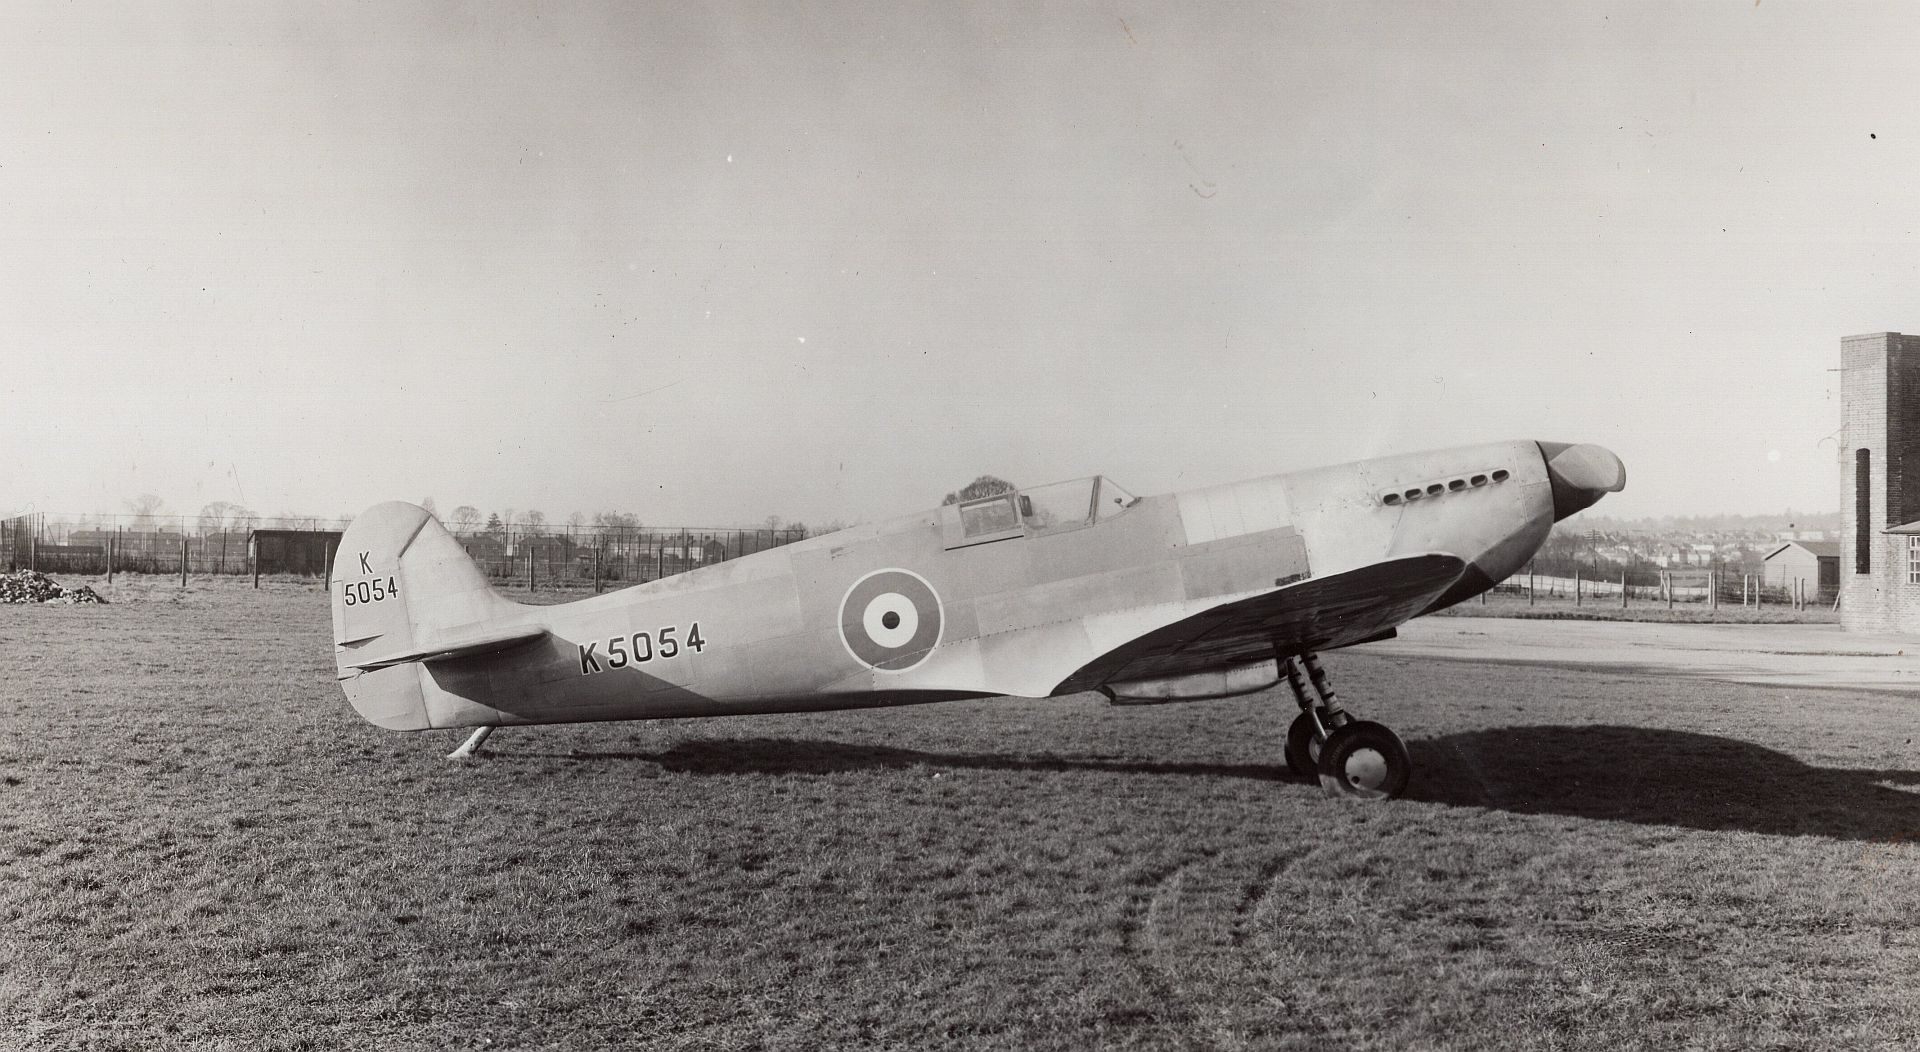 Spitfire Prototype K5054